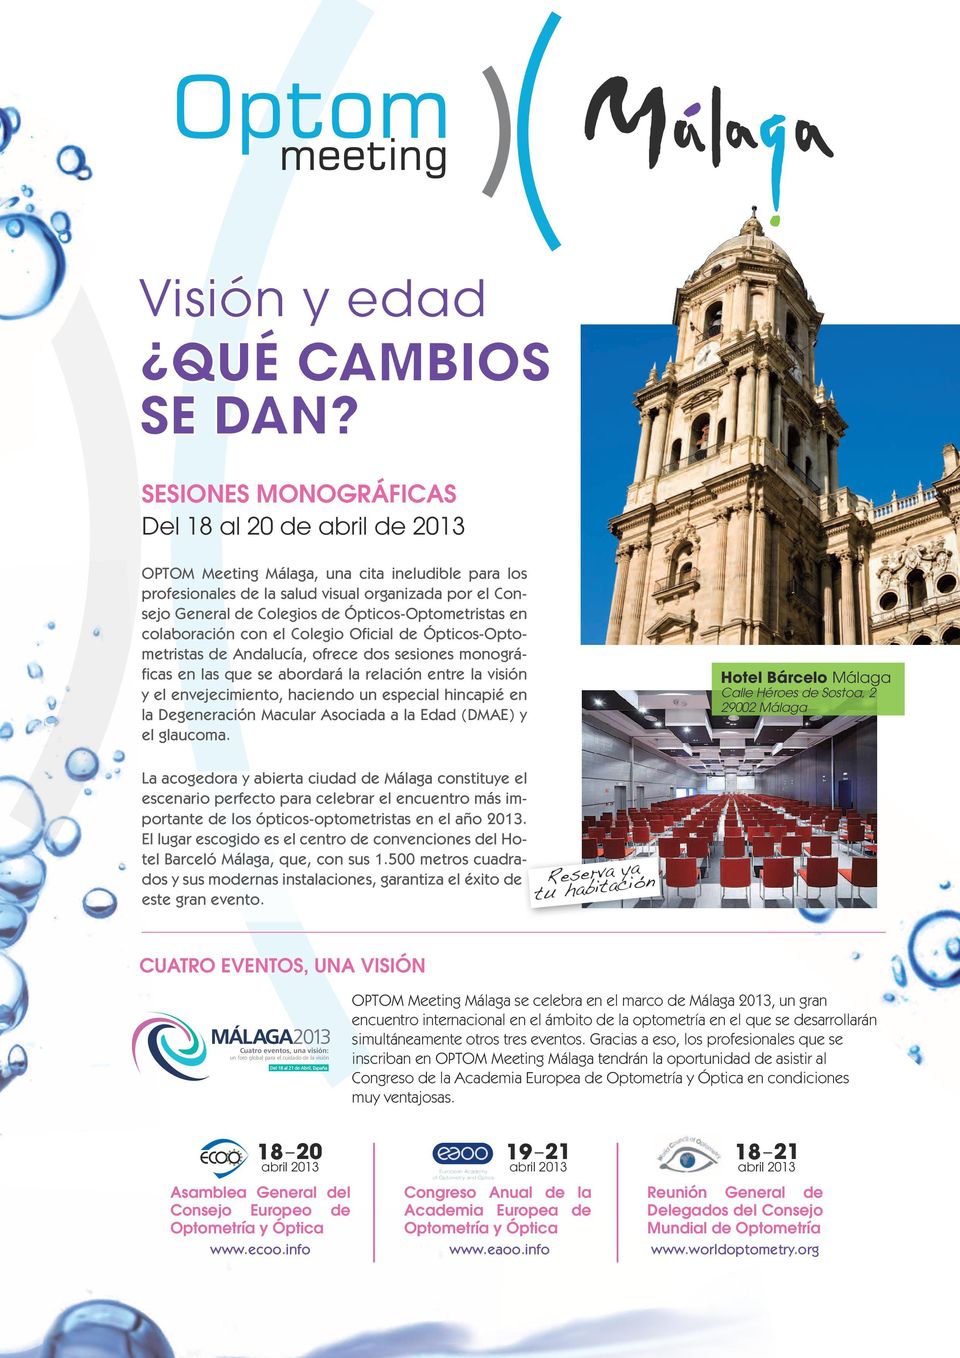 Ópticos-Optometristas en colaboración con el Colegio Oficial de Ópticos-Optometristas de Andalucía, ofrece dos sesiones monográficas en las que se abordará la relación entre la visión y el